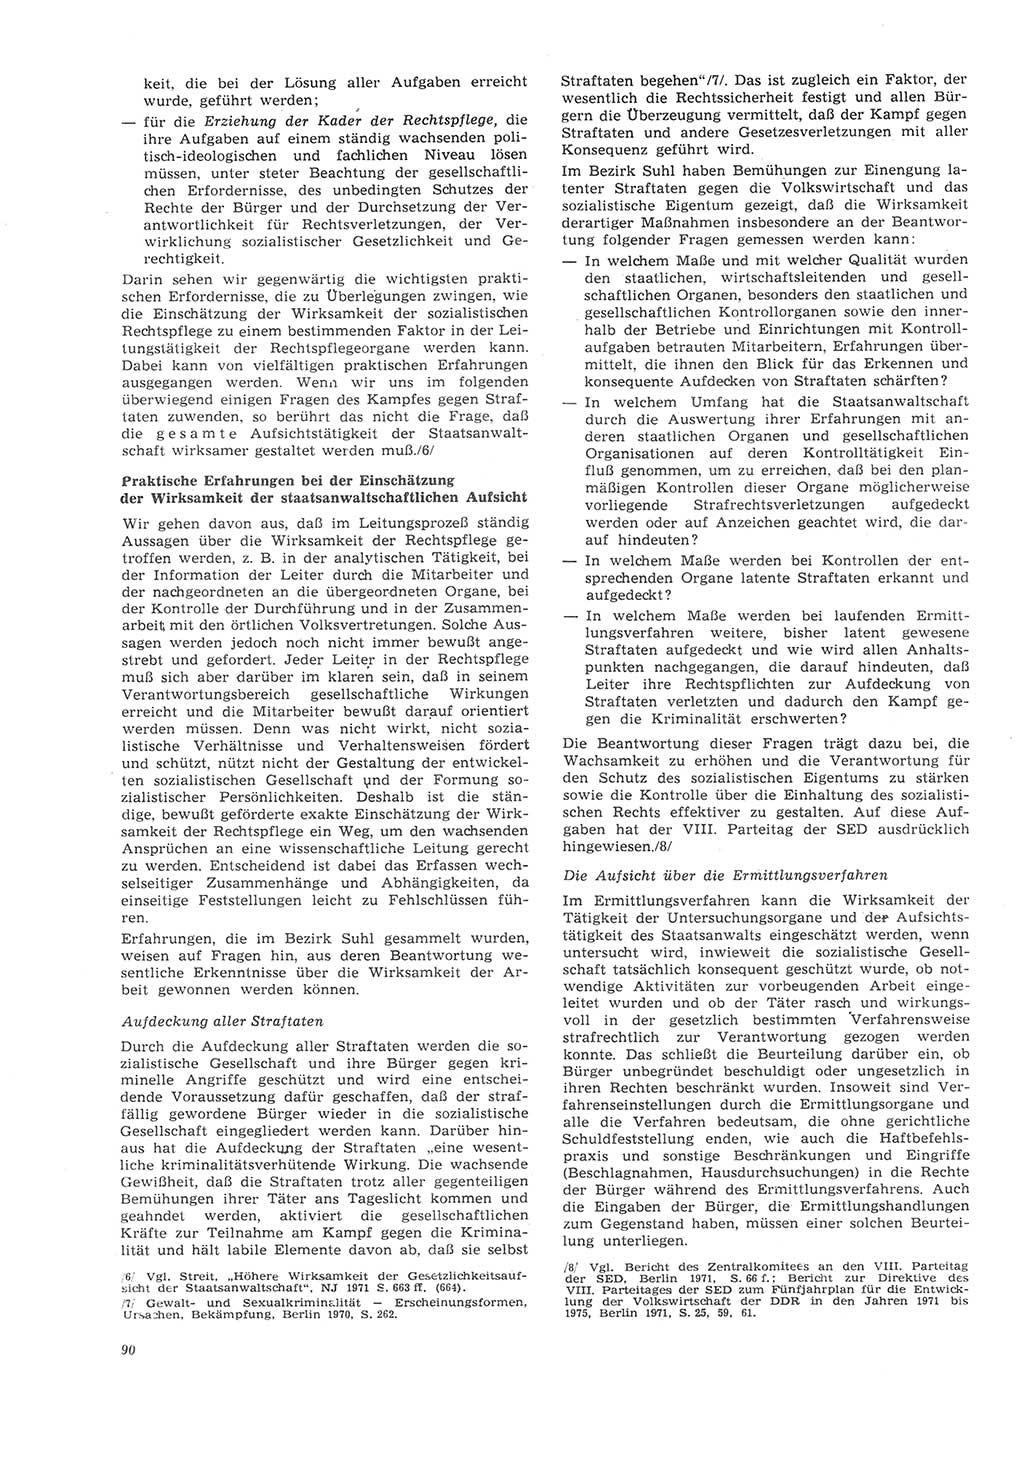 Neue Justiz (NJ), Zeitschrift für Recht und Rechtswissenschaft [Deutsche Demokratische Republik (DDR)], 26. Jahrgang 1972, Seite 90 (NJ DDR 1972, S. 90)